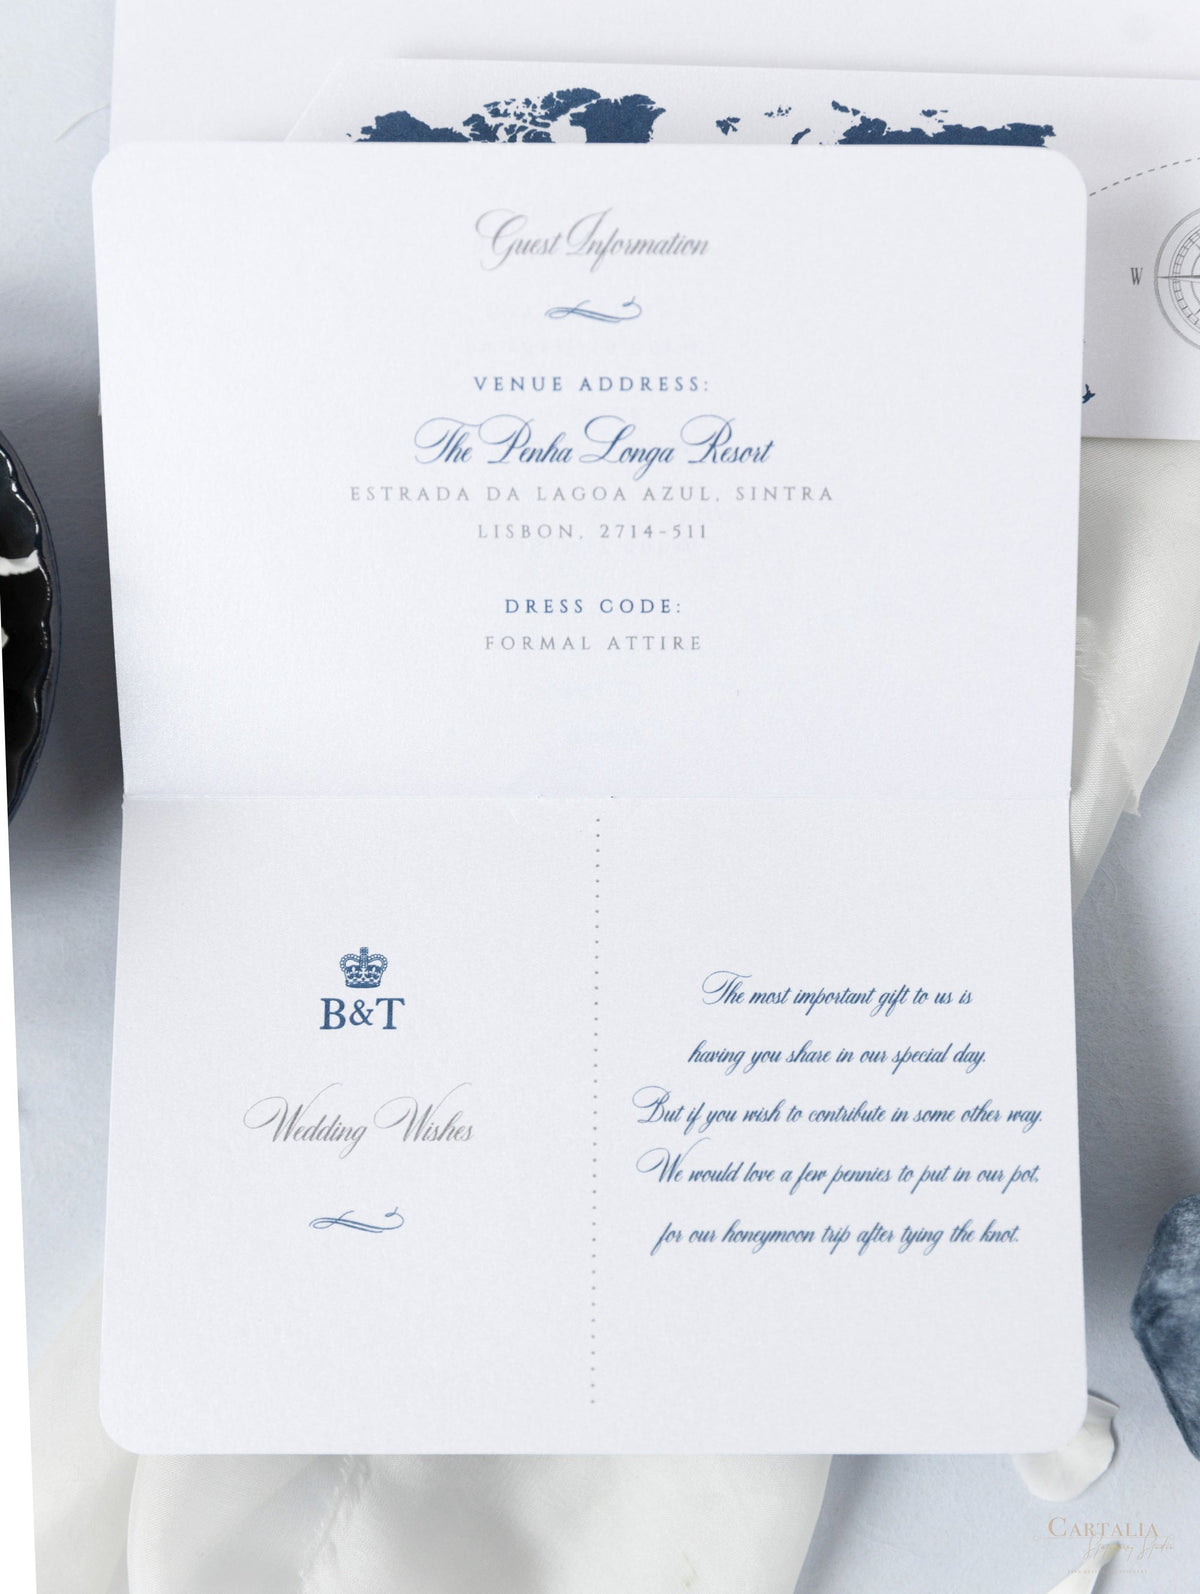 Portafoglio da viaggio FOLDER argento e blu navy: lussuosa suite per inviti per passaporto di nozze in tasca e etichetta a specchio